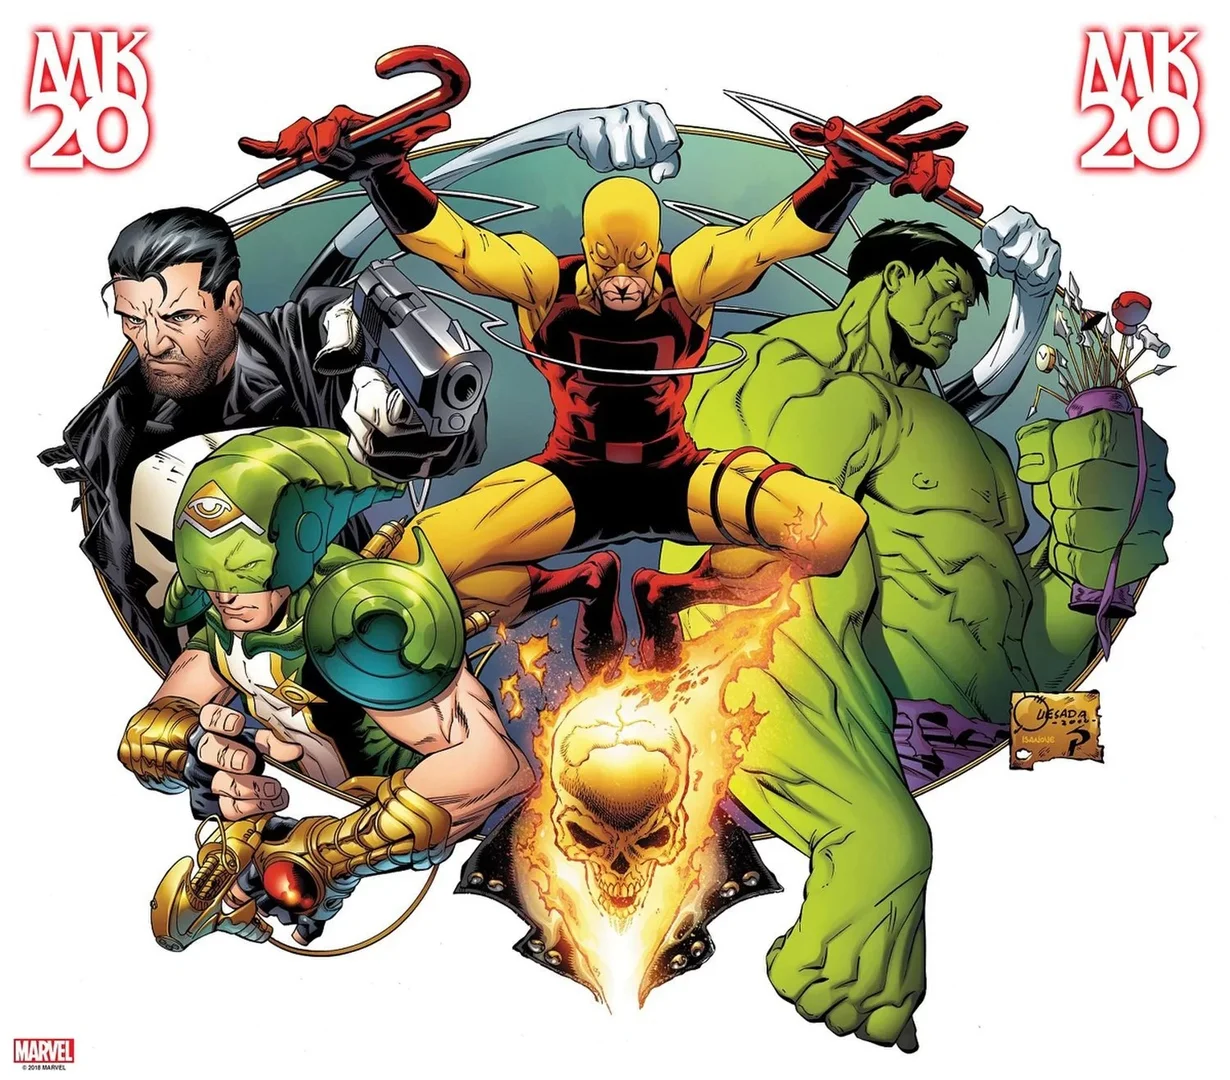 20 лет назад издательство Marvel запустило импринт Marvel Knights, в рамках которого выходили истории, предлагавшие свежий взгляд на уже хорошо знакомых аудитории героев — Сорвиголову, Черную пантеру, Лунного рыцаря и других. Действие всех этих комиксов происходило в основной вселенной, но при этом они были обособлены и самостоятельны. Комиксы Marvel Knights были рассчитаны на подростков, так как поднимали более серьезные темы (но не на уровне Marvel MAX). В честь юбилея издательство выпустило мини-серию Marvel Knights 20th, о которой и пойдет речь в этом материале.